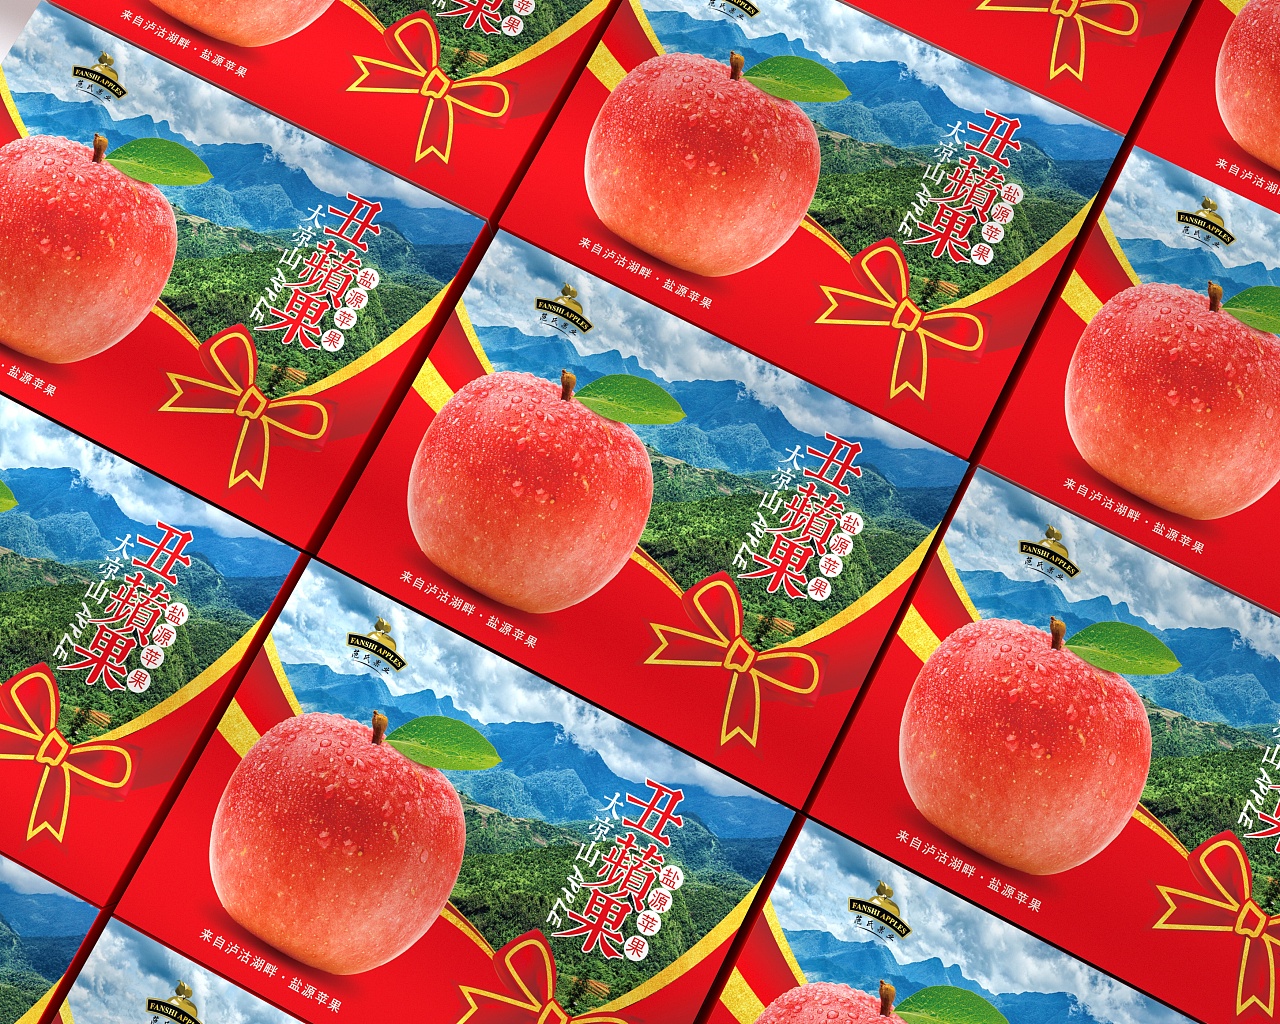 阿克苏冰糖心丑苹果王林晴川富士苹果包装,水果包装盒